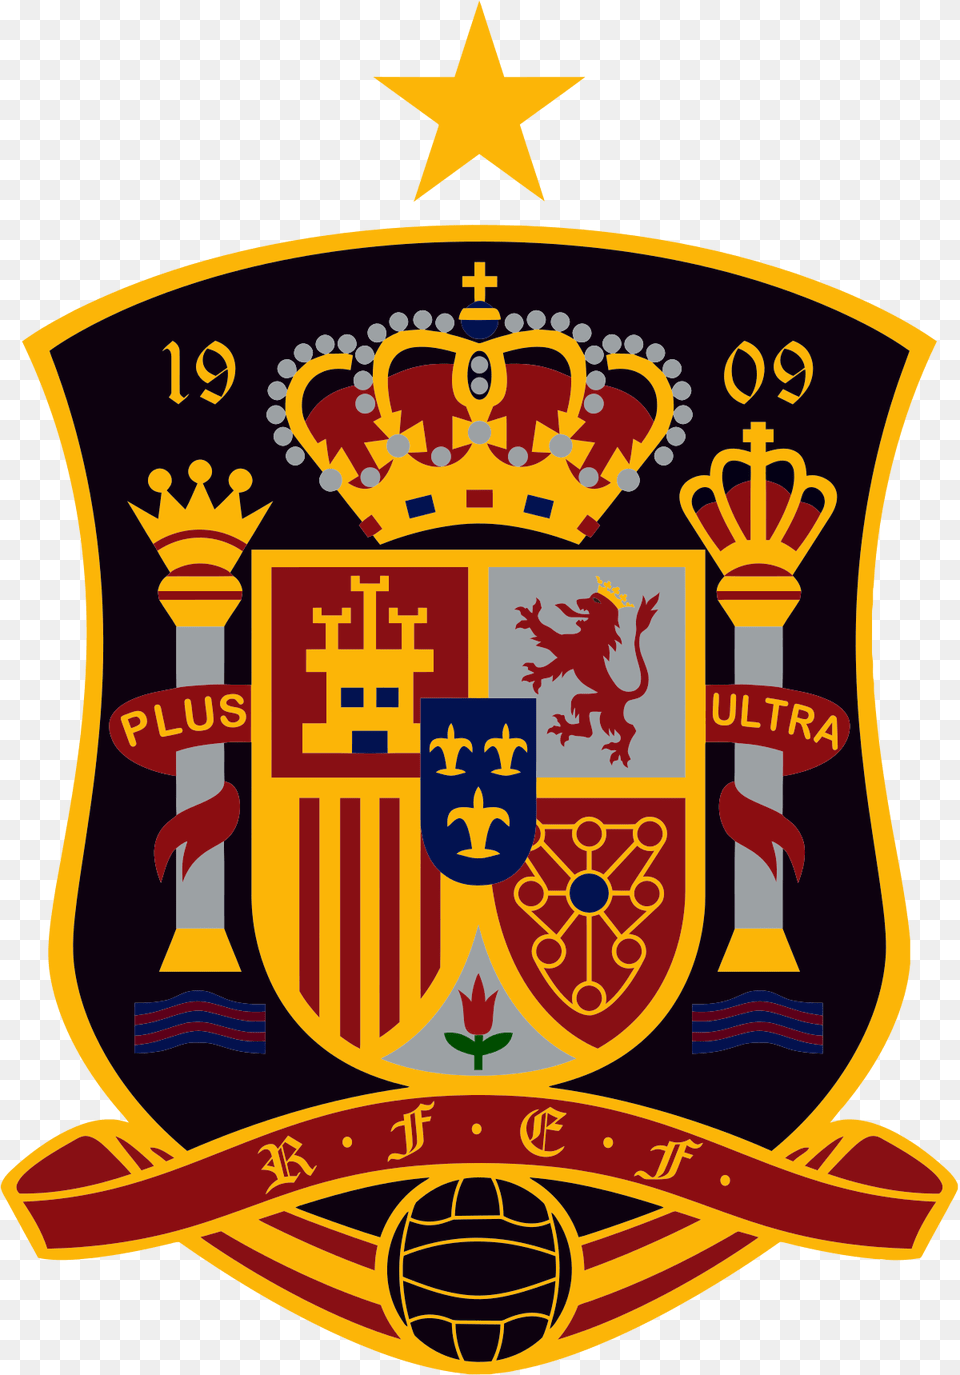 Spain National Football Team, Emblem, Symbol, Logo, Badge Png Image